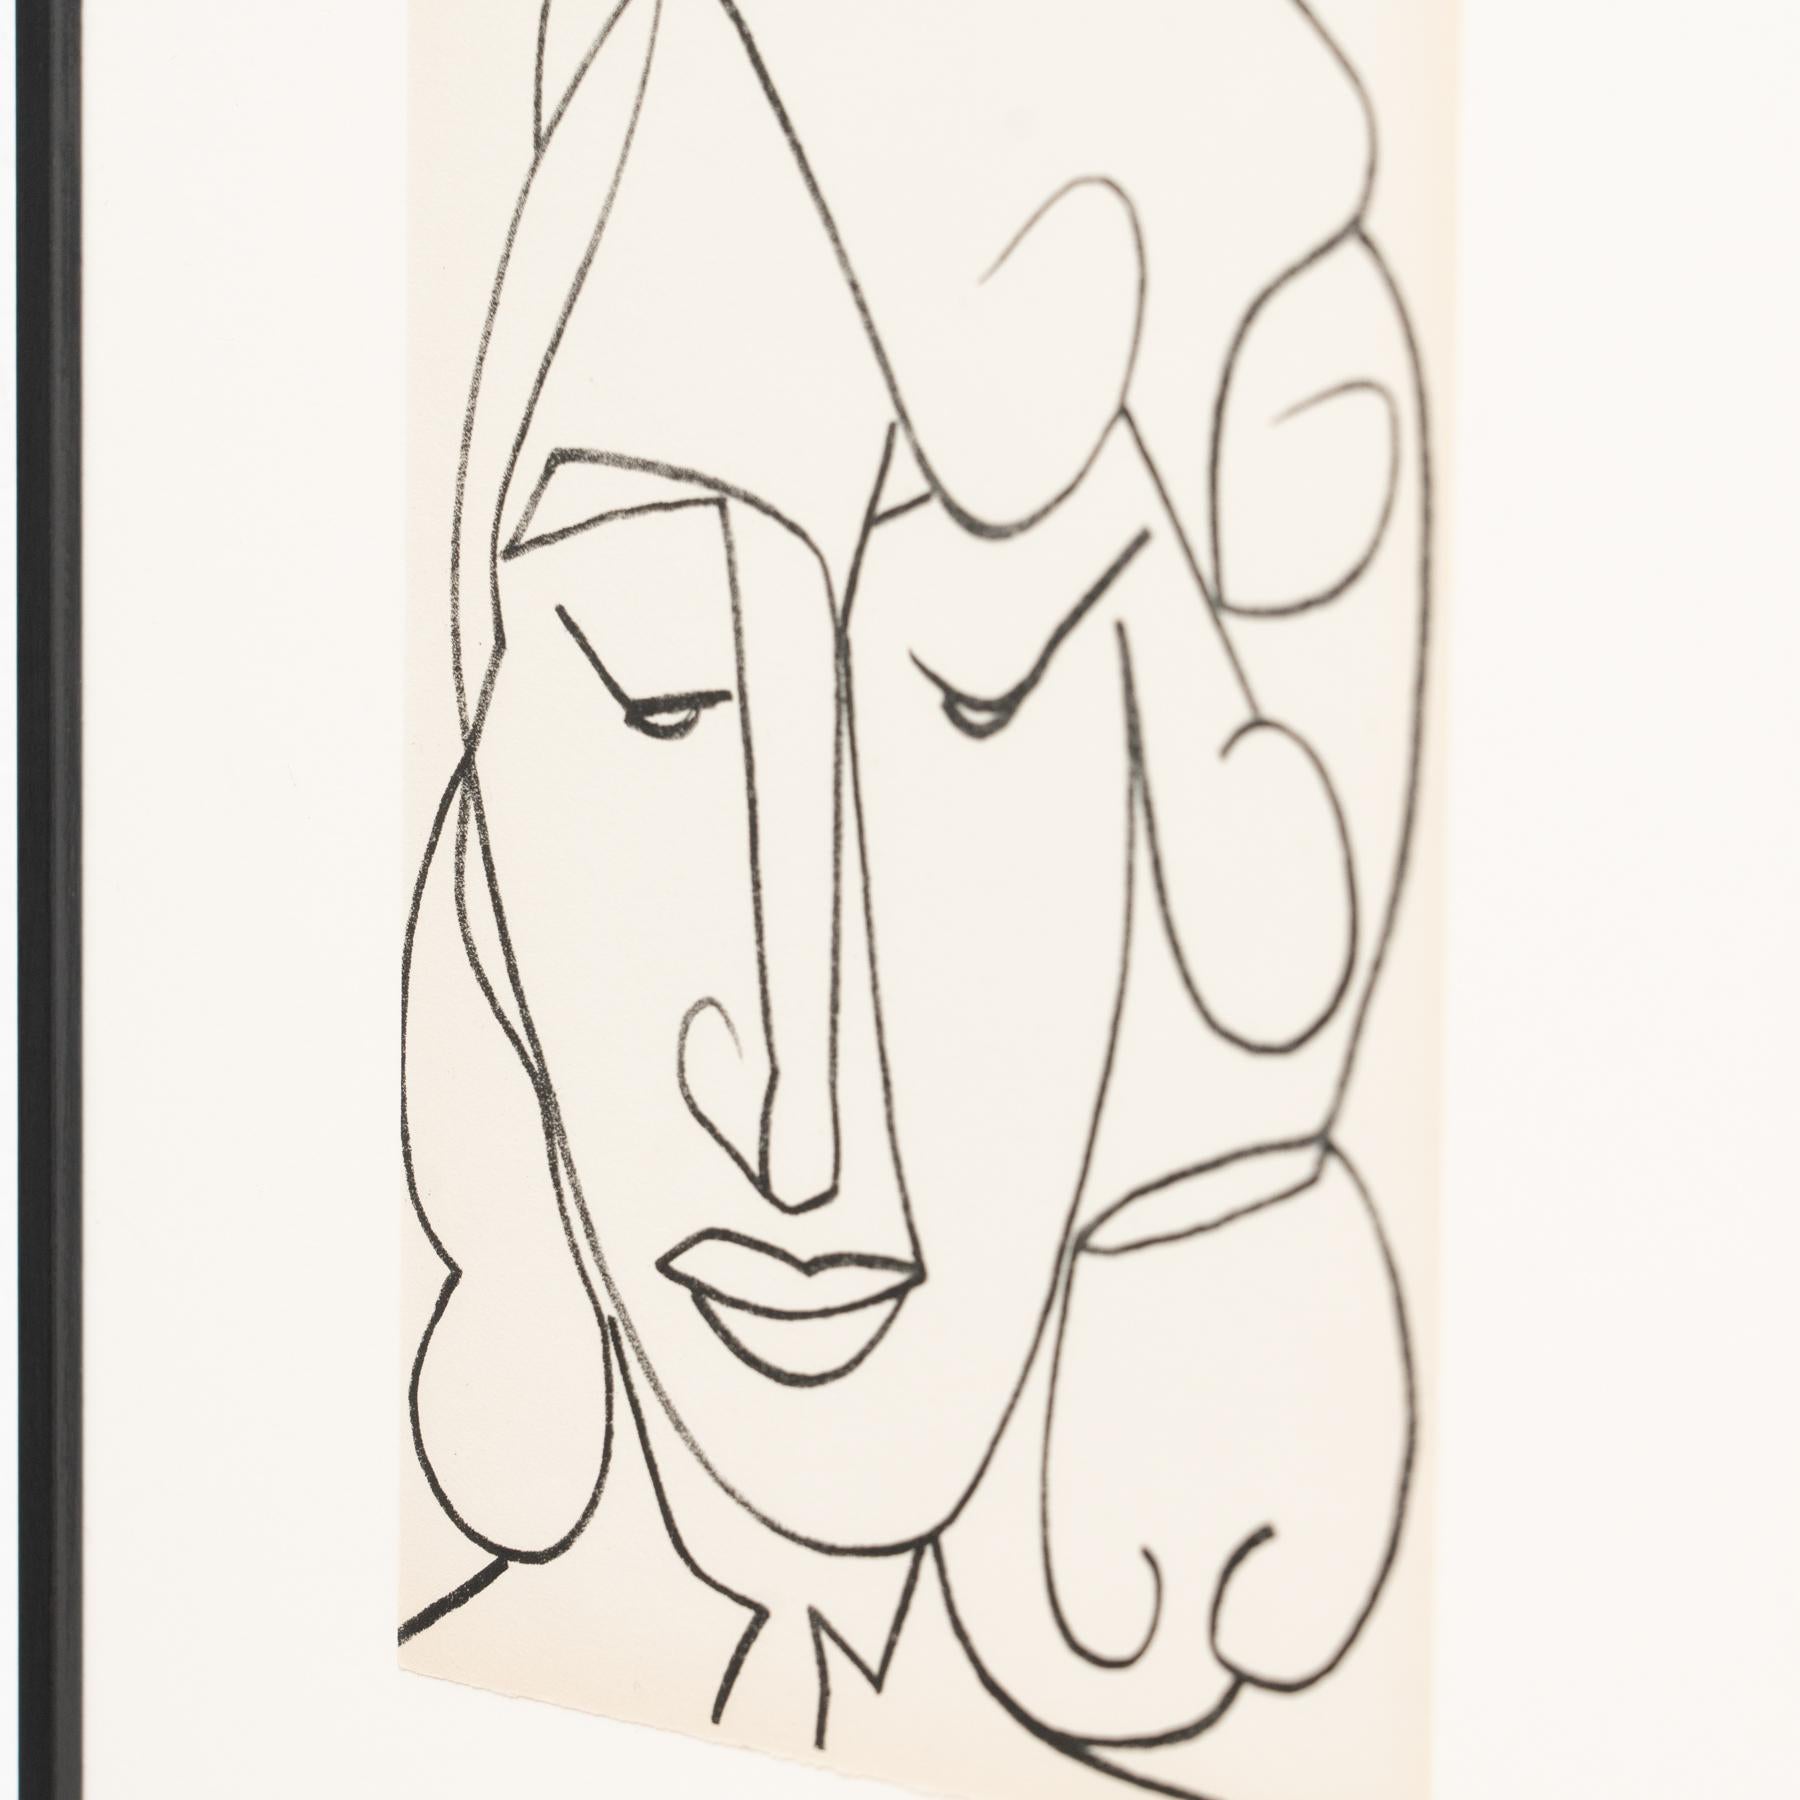 French Françoise Gilot Lithograph 'Portrait Head of a Woman', 1951